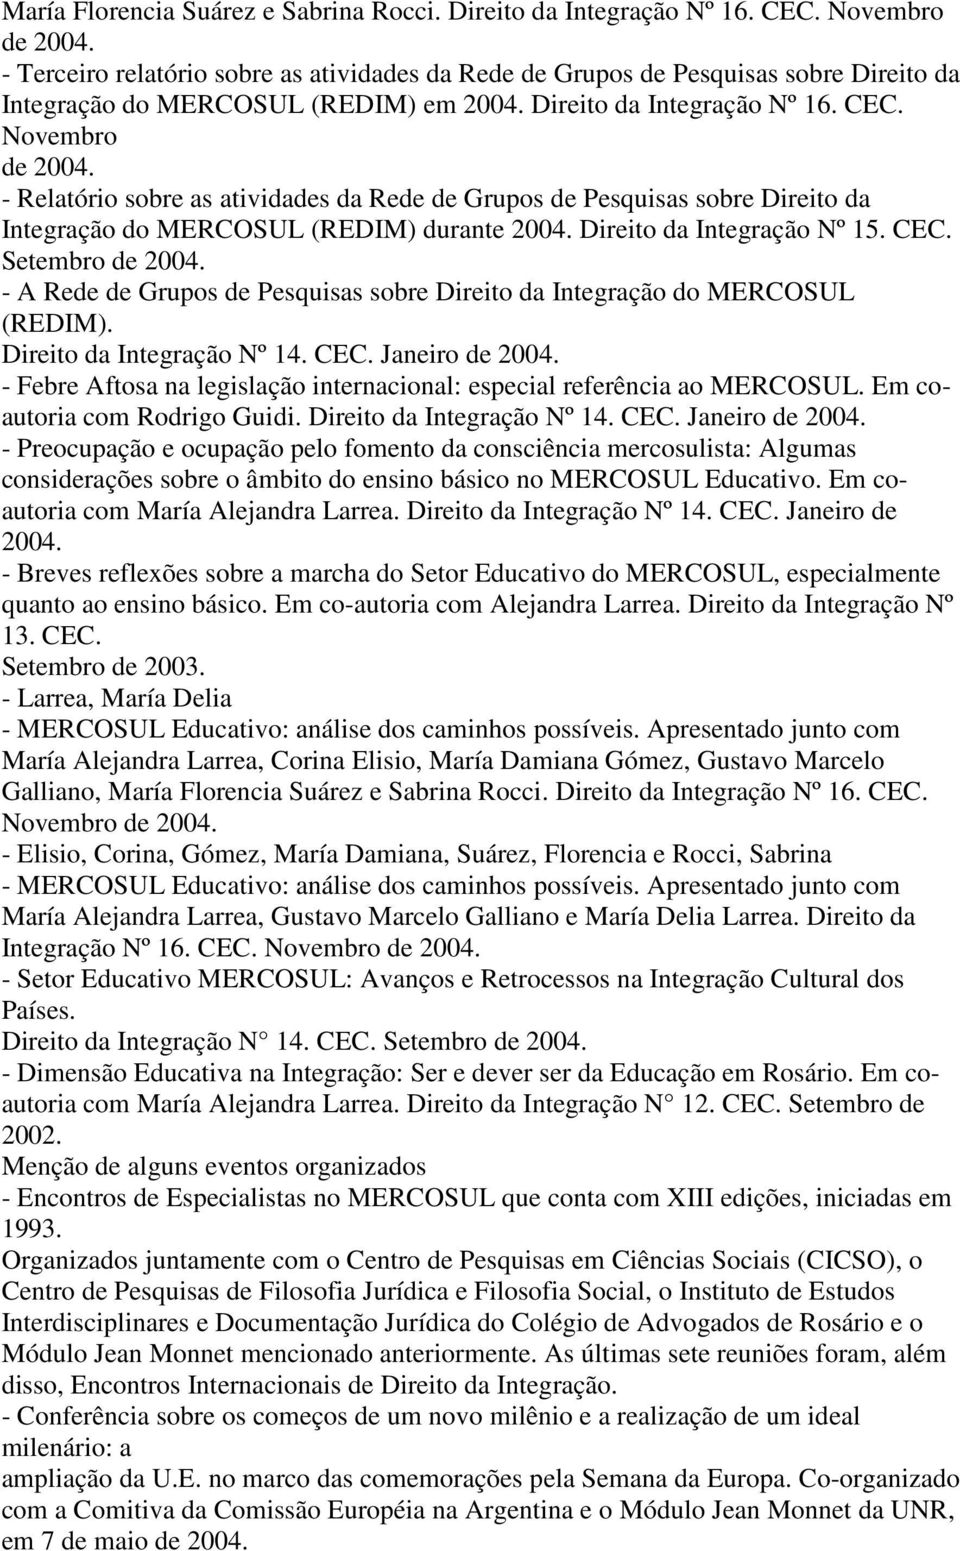 - Relatório sobre as atividades da Rede de Grupos de Pesquisas sobre Direito da Integração do MERCOSUL (REDIM) durante 2004. Direito da Integração Nº 15. CEC. Setembro de 2004.